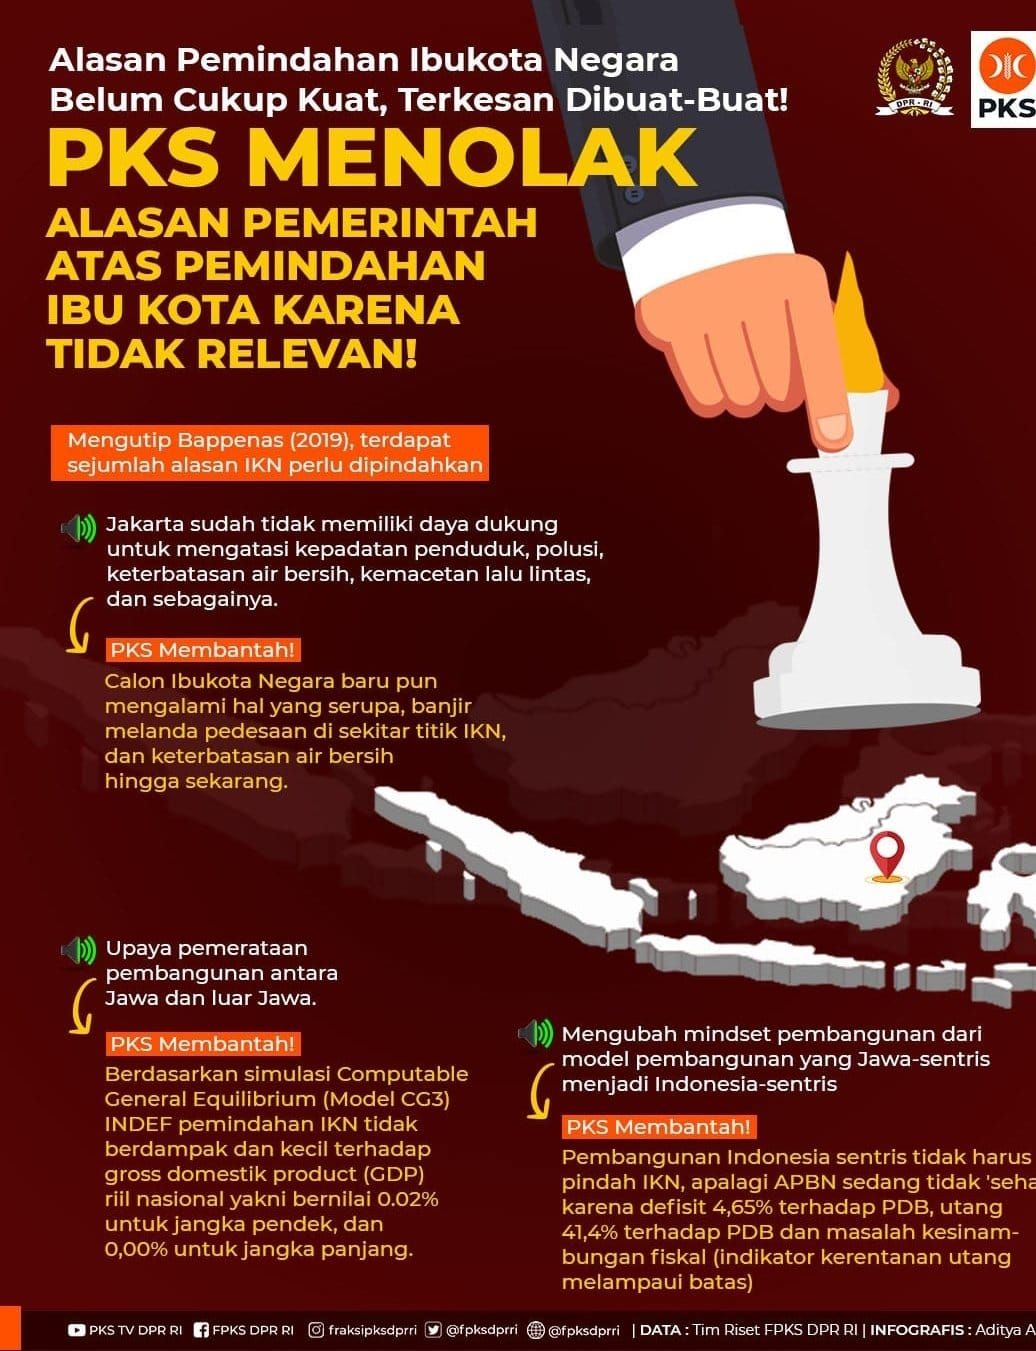 Partai Keadilan Sejahtera (PKS) secara tegas menolak nama Nusantara dan pemindahan Ibu Kota Negara (IKN) dari Jakarta ke Kalimantan Timur.